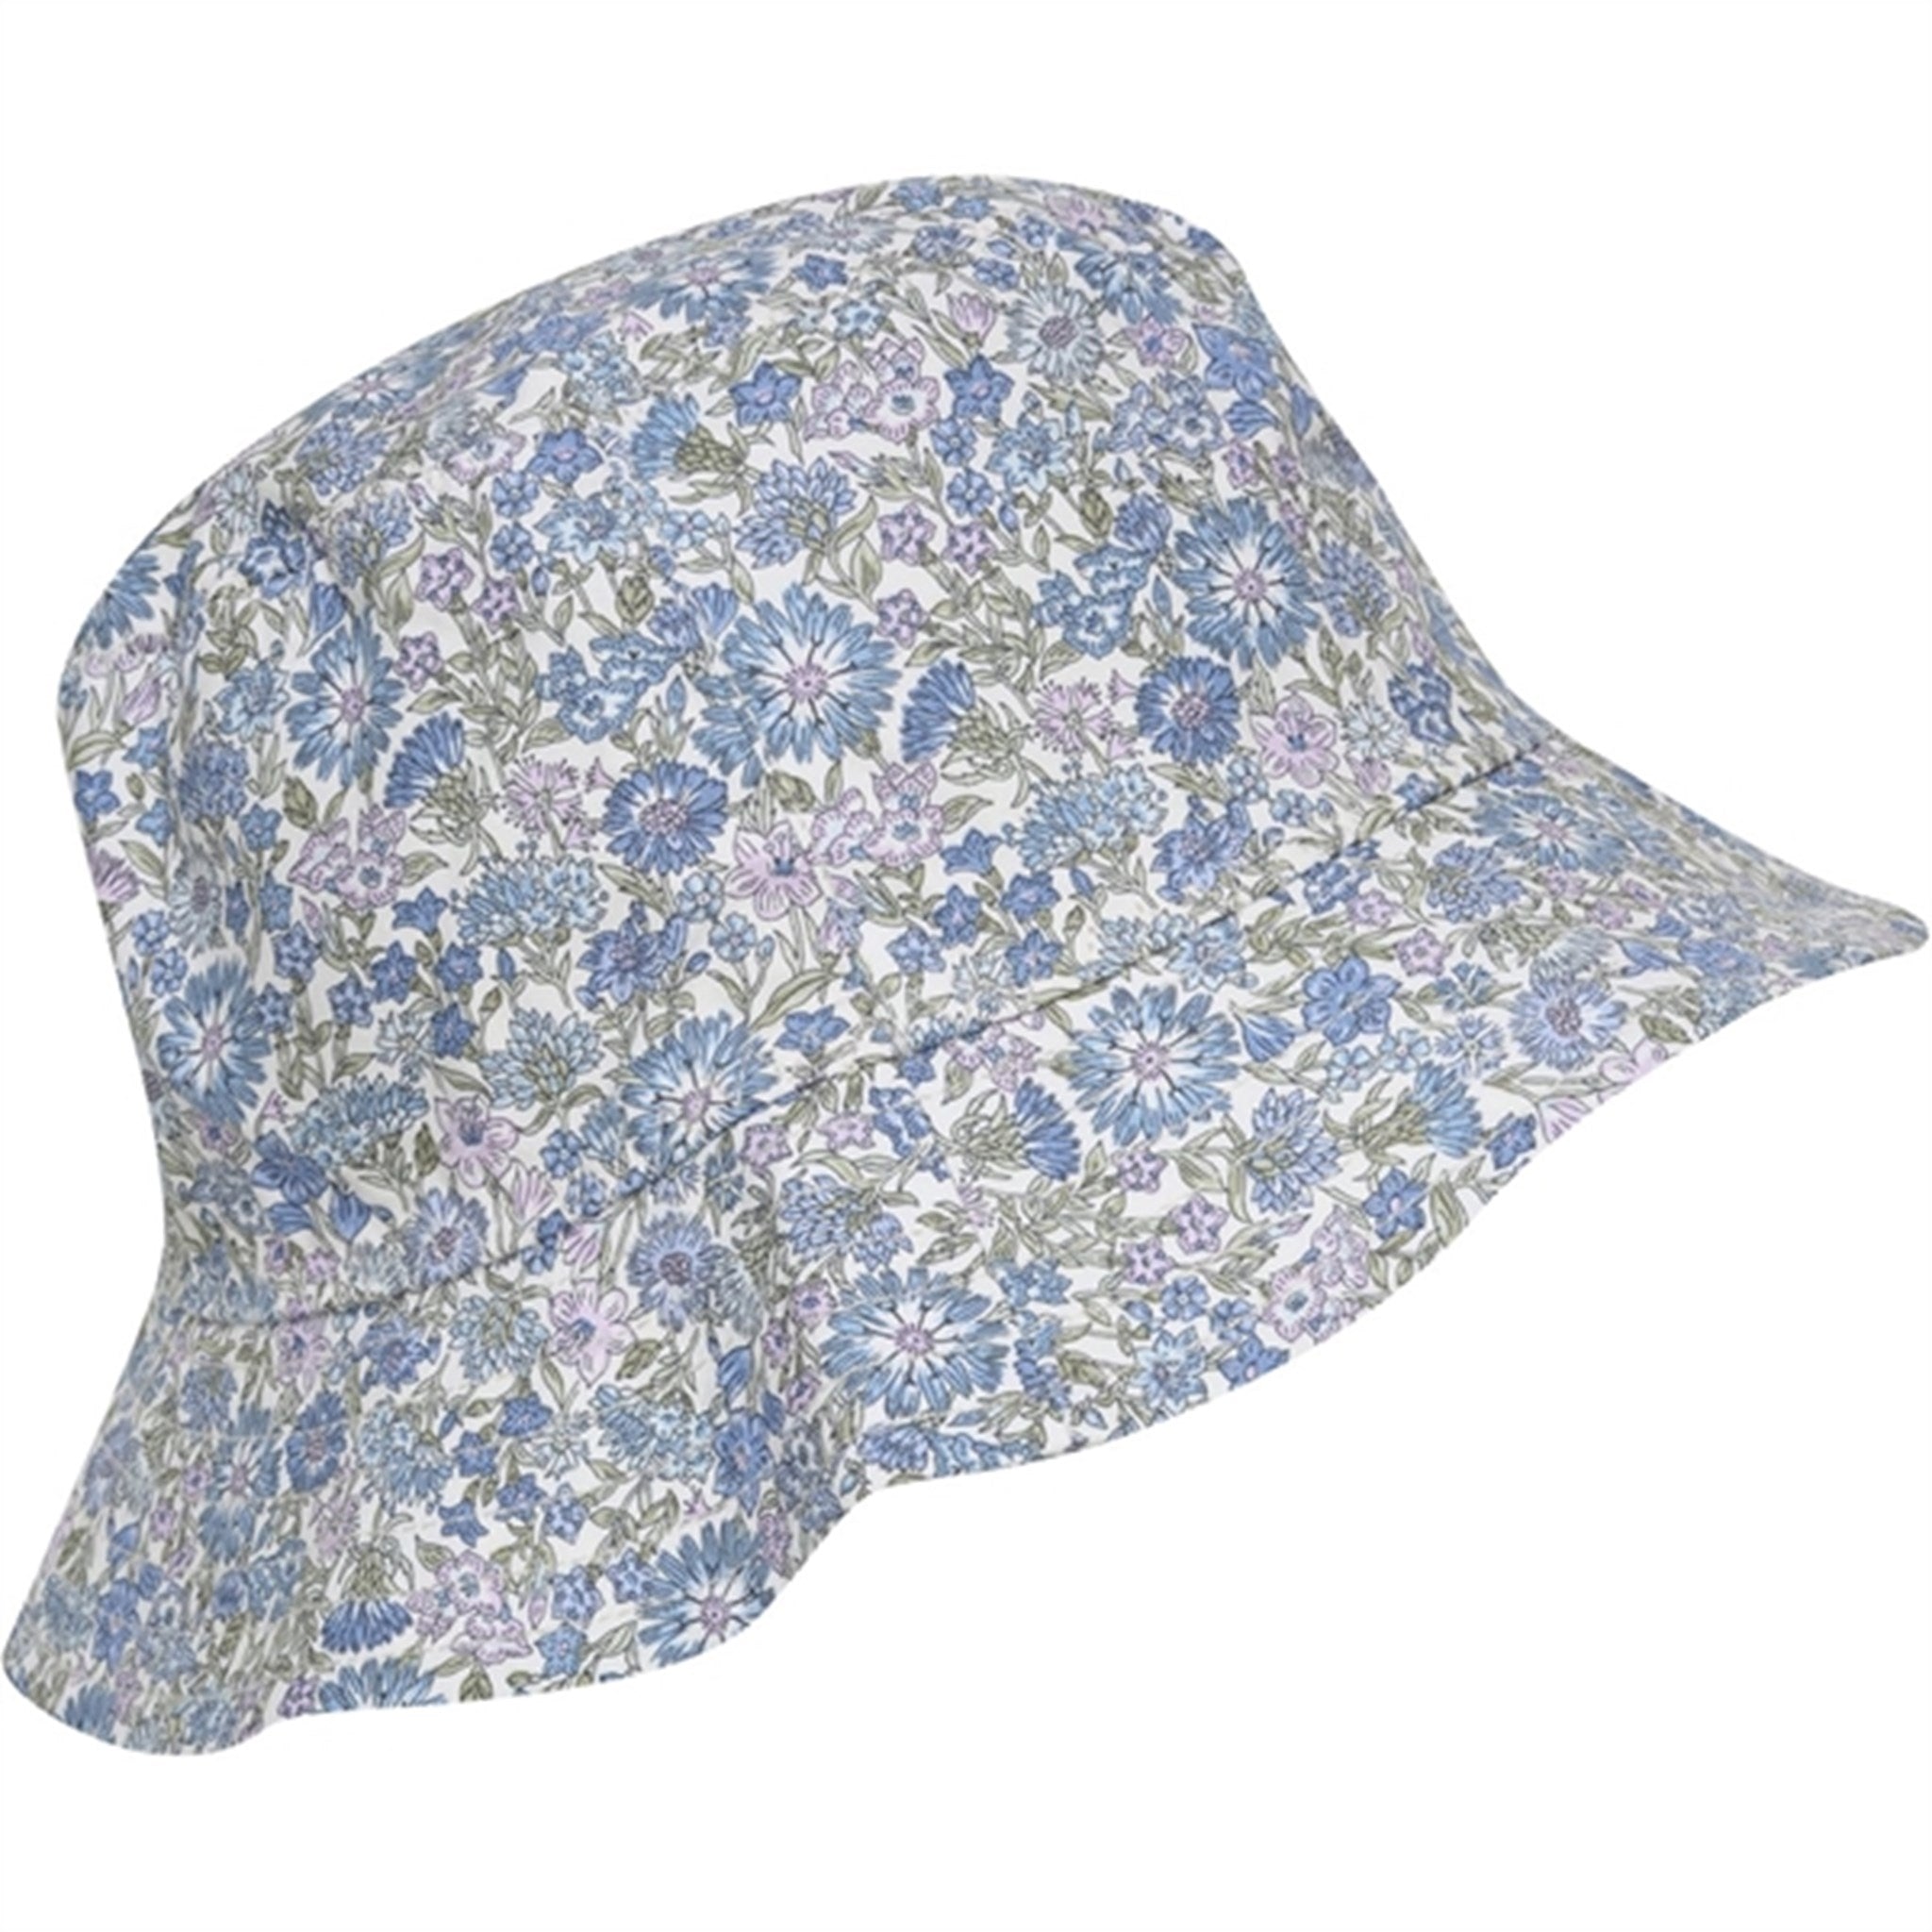 Huttelihut Liberty Fabric May Field Bucket Hat